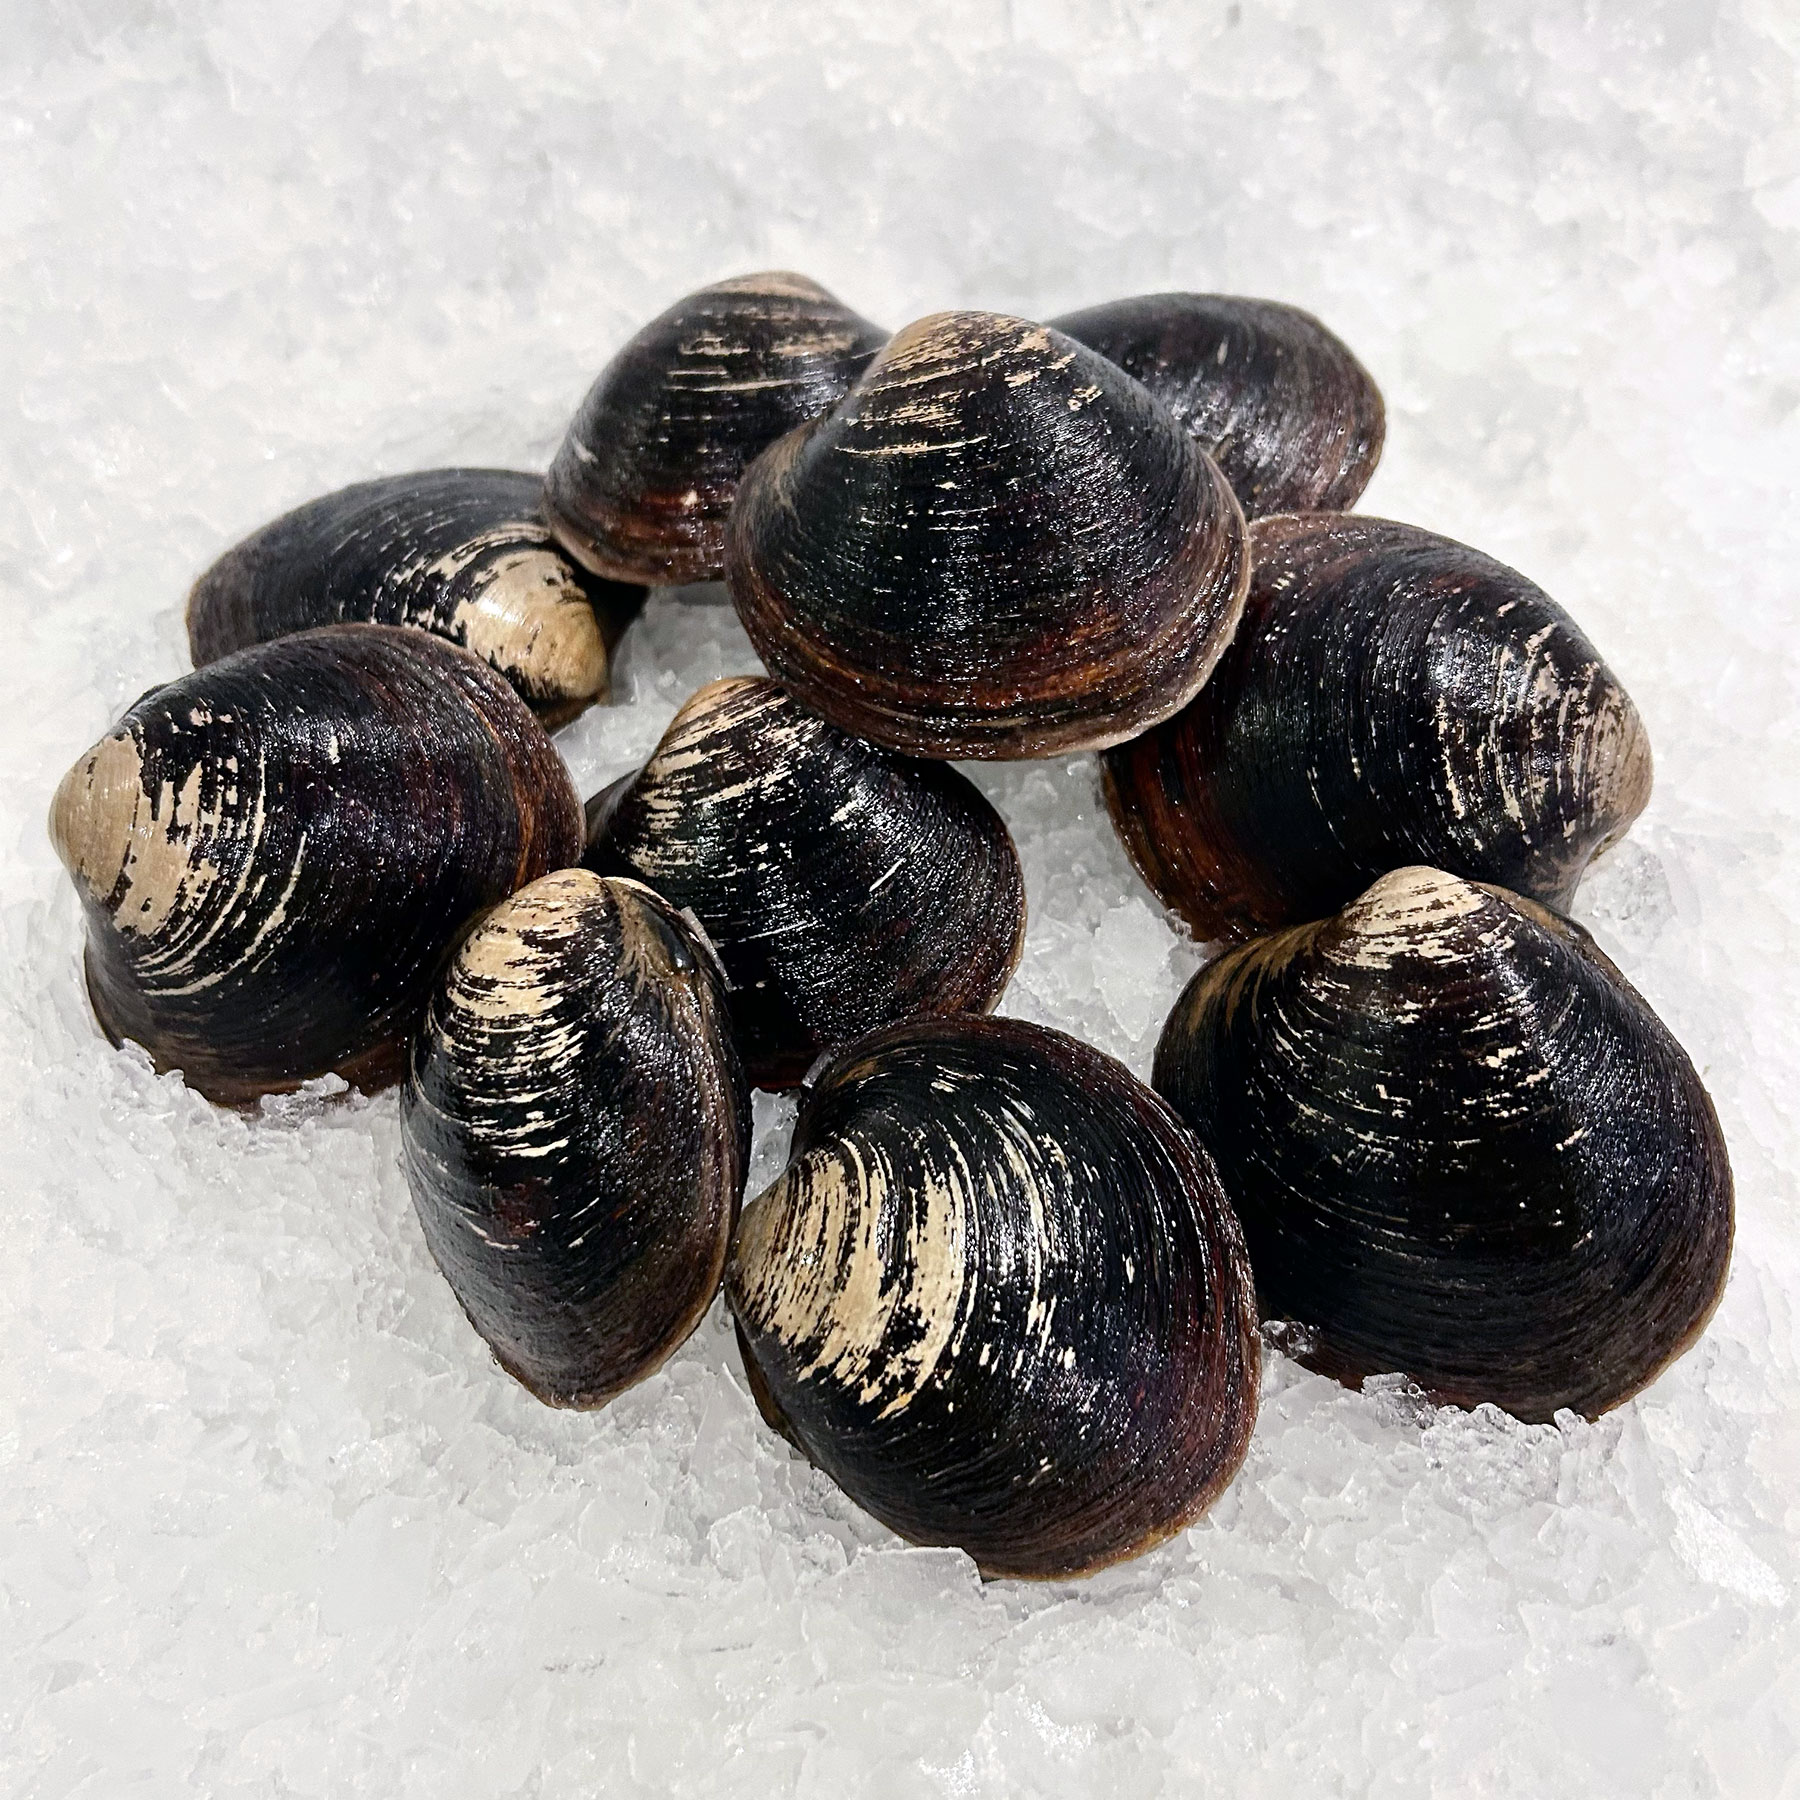 Mar Seafood Mahogany Clams - Specialty Shellfish